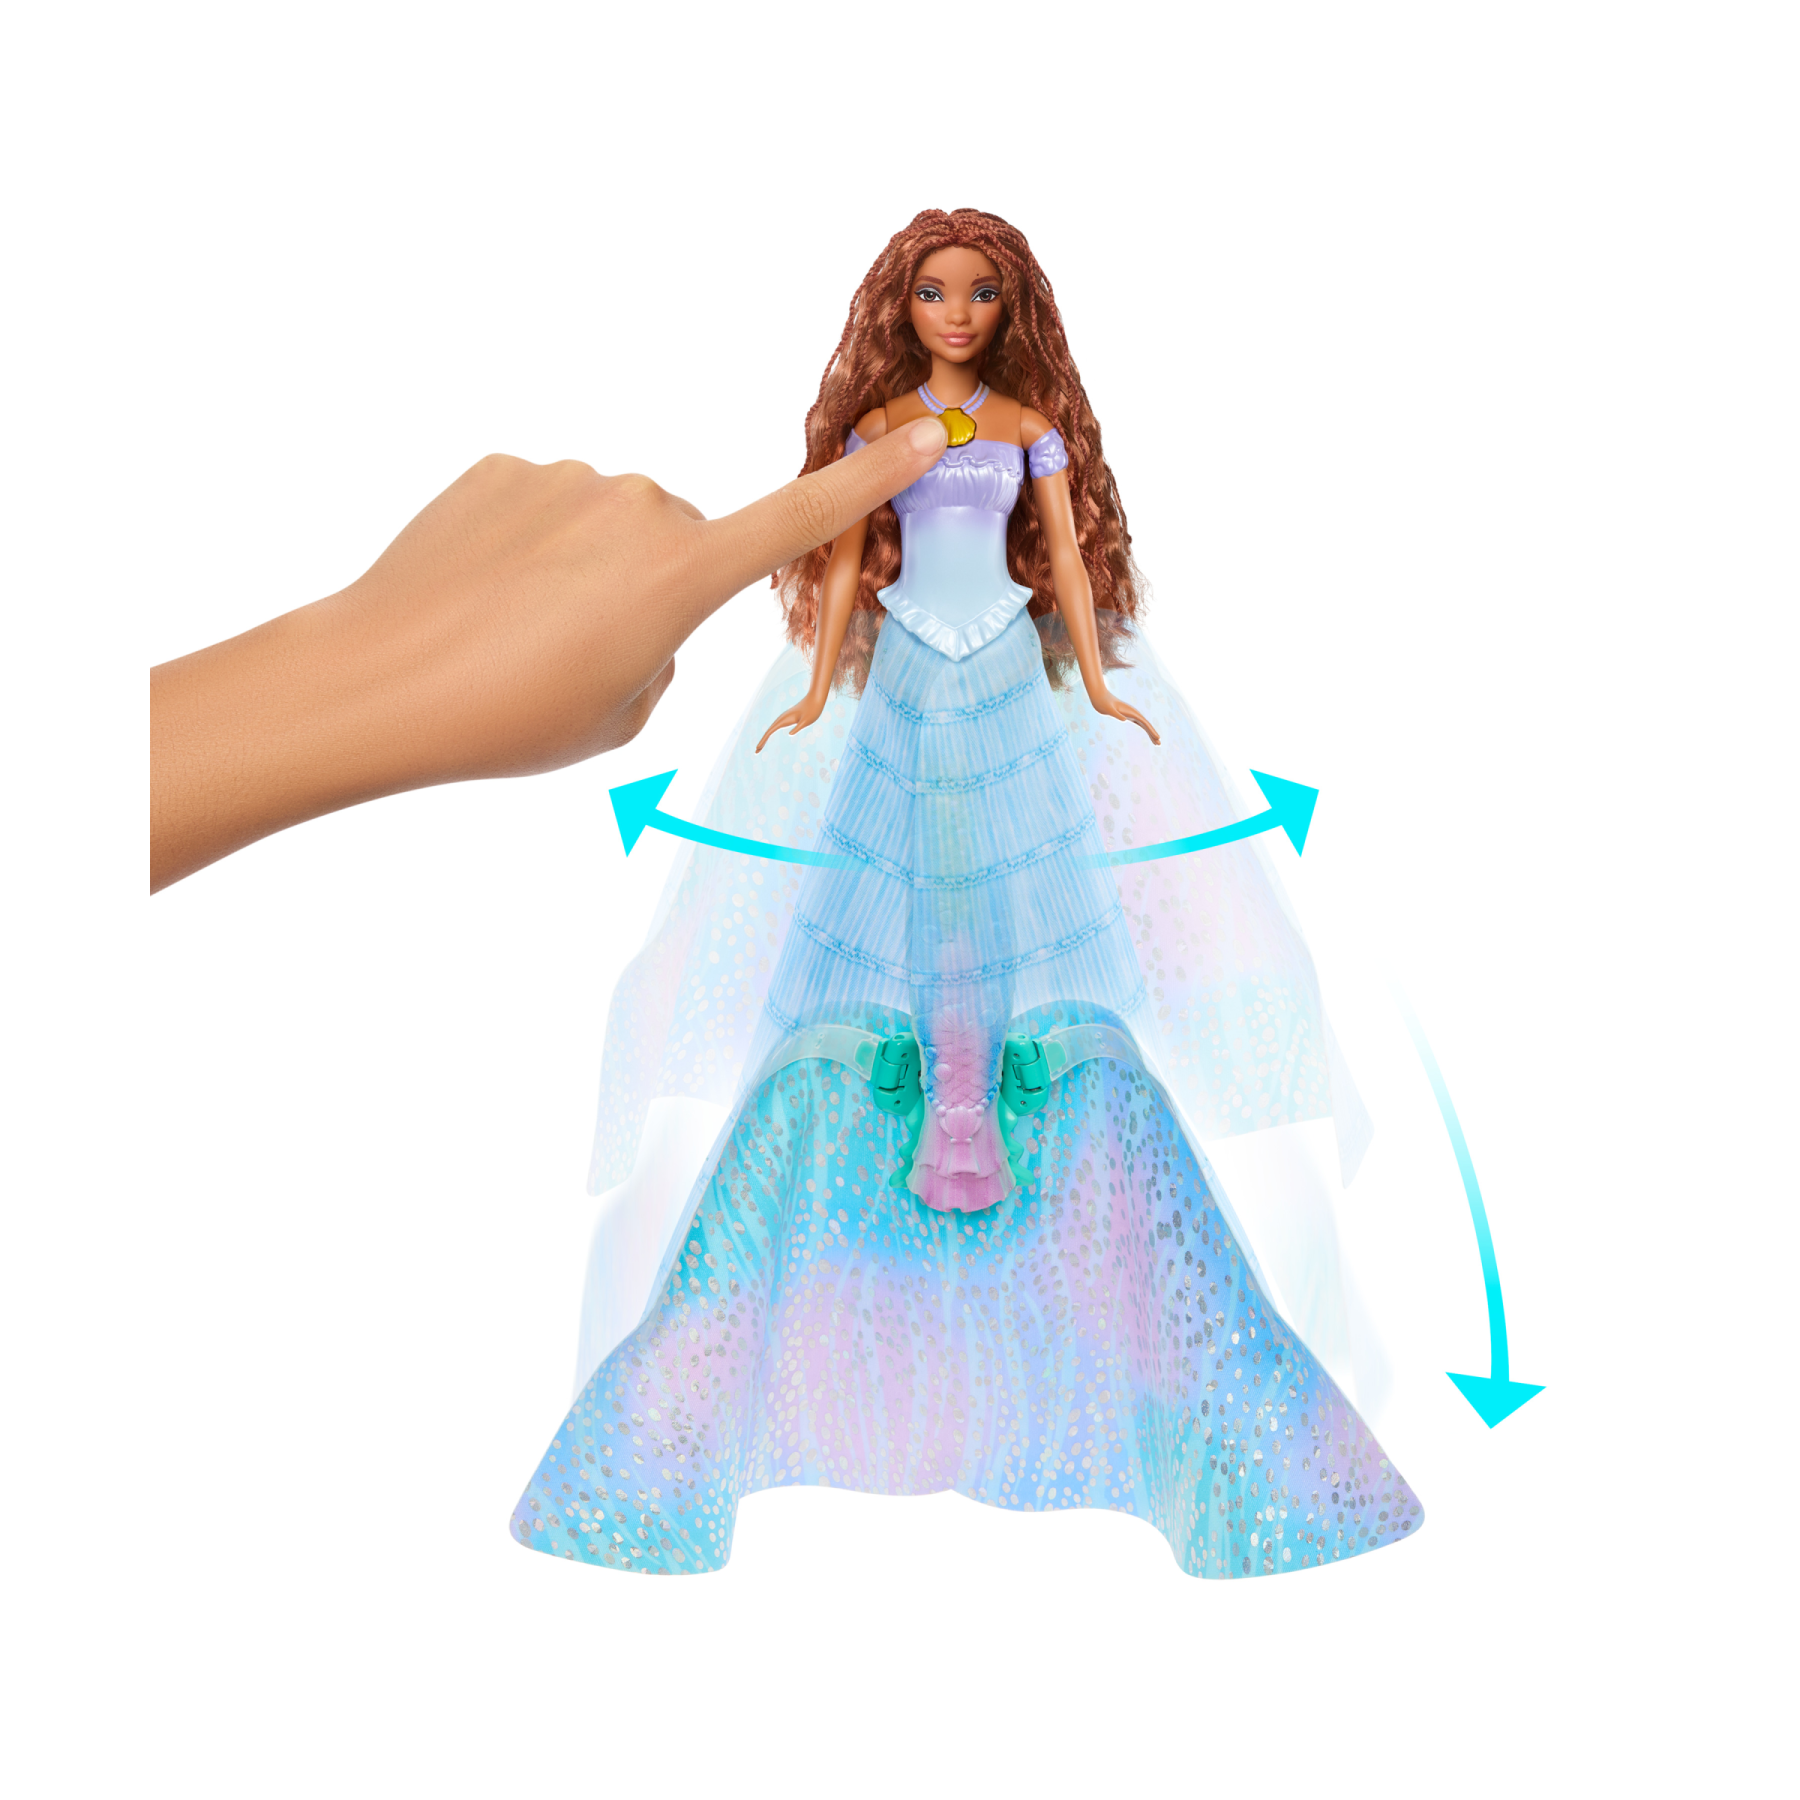 Disney la sirenetta - ariel bambola trasformabile, cambia da umana a sirena, premi la collana e l'abito blu diventa una coda da sirena multicolore, giocattolo per bambini, 3+ anni, hlx13 - DISNEY PRINCESS